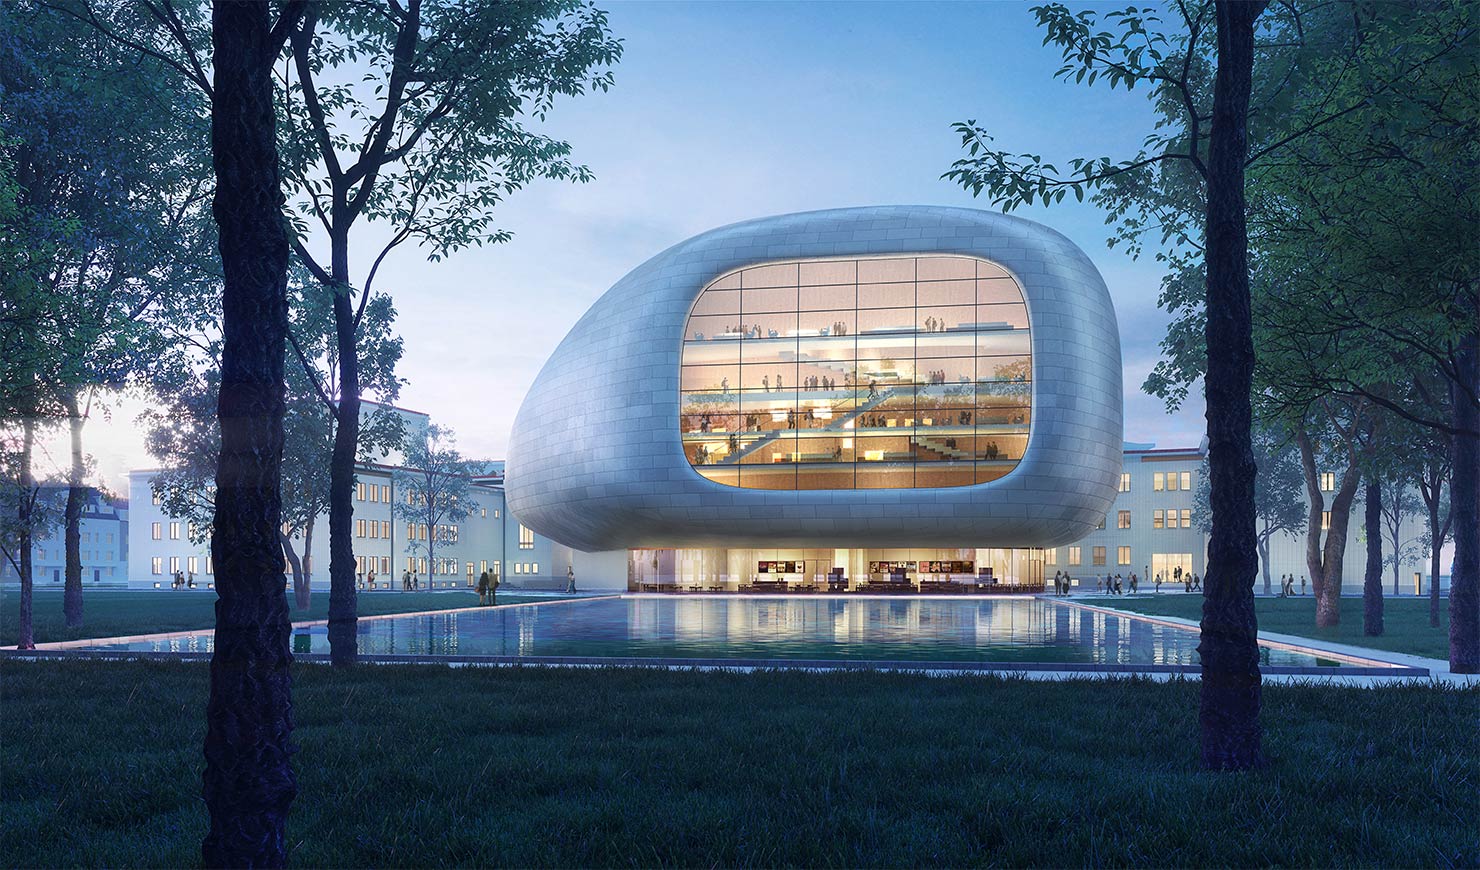 コンサートホール、オペラハウスのサステナビリティ構想。音響と環境のためのデザインとは？